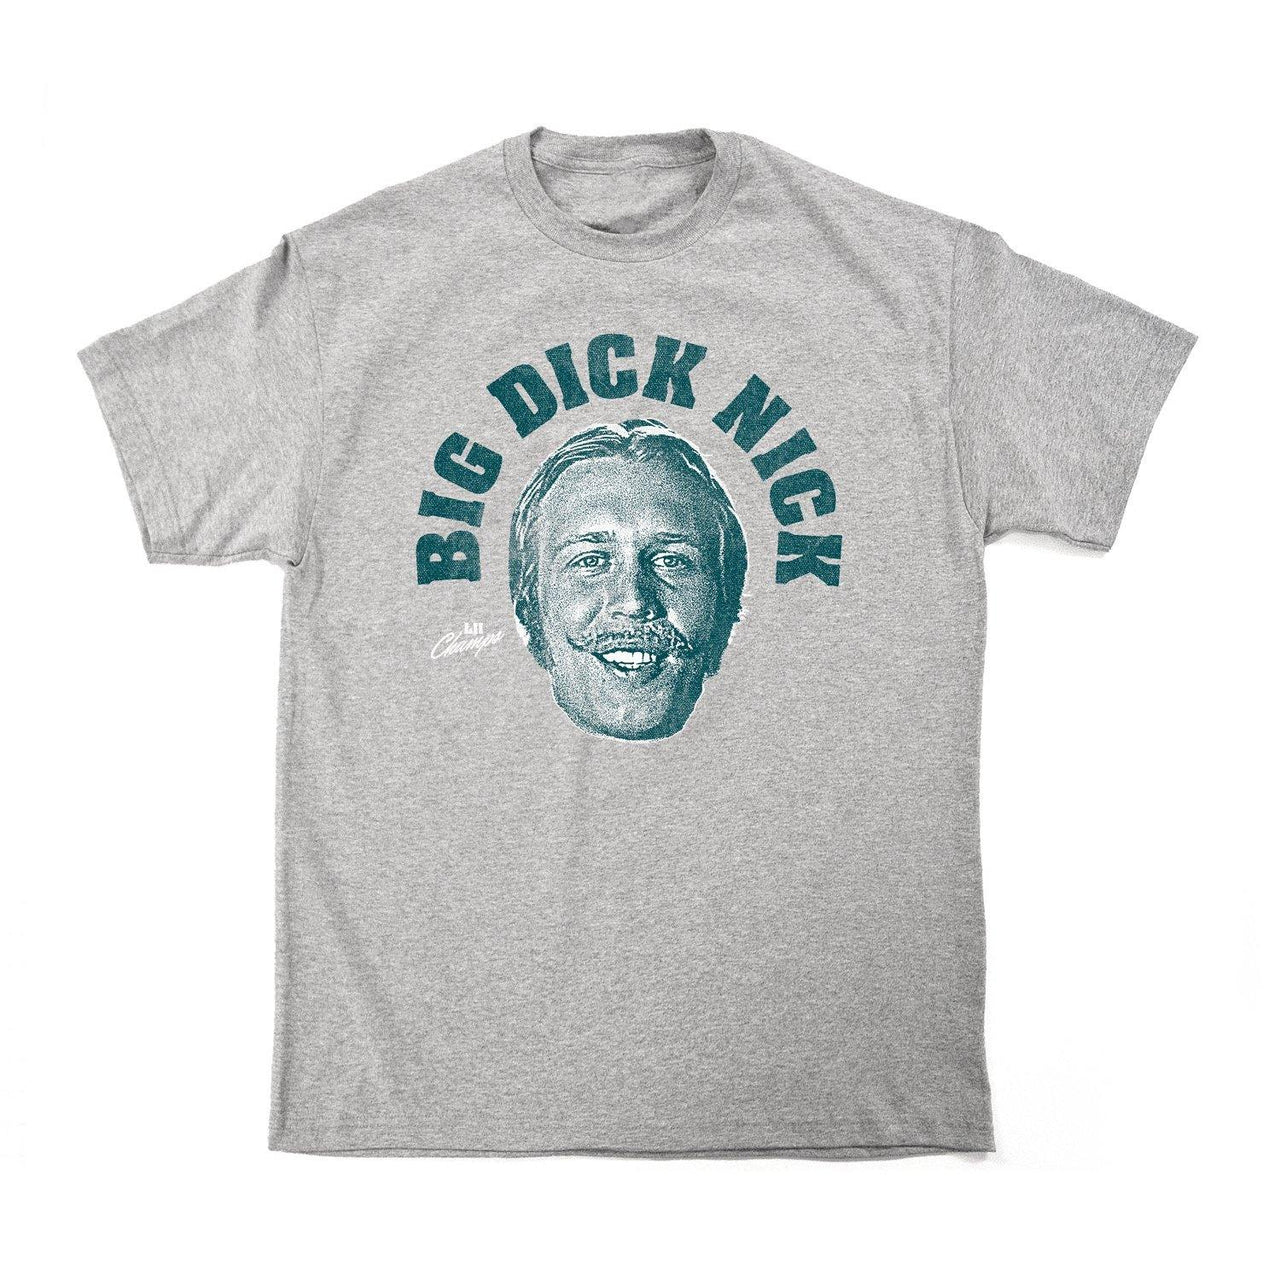 Buy – Cracked Bell "Big Di*k Nick" Shirt – Band & Music Merch – Cold Cuts Merch